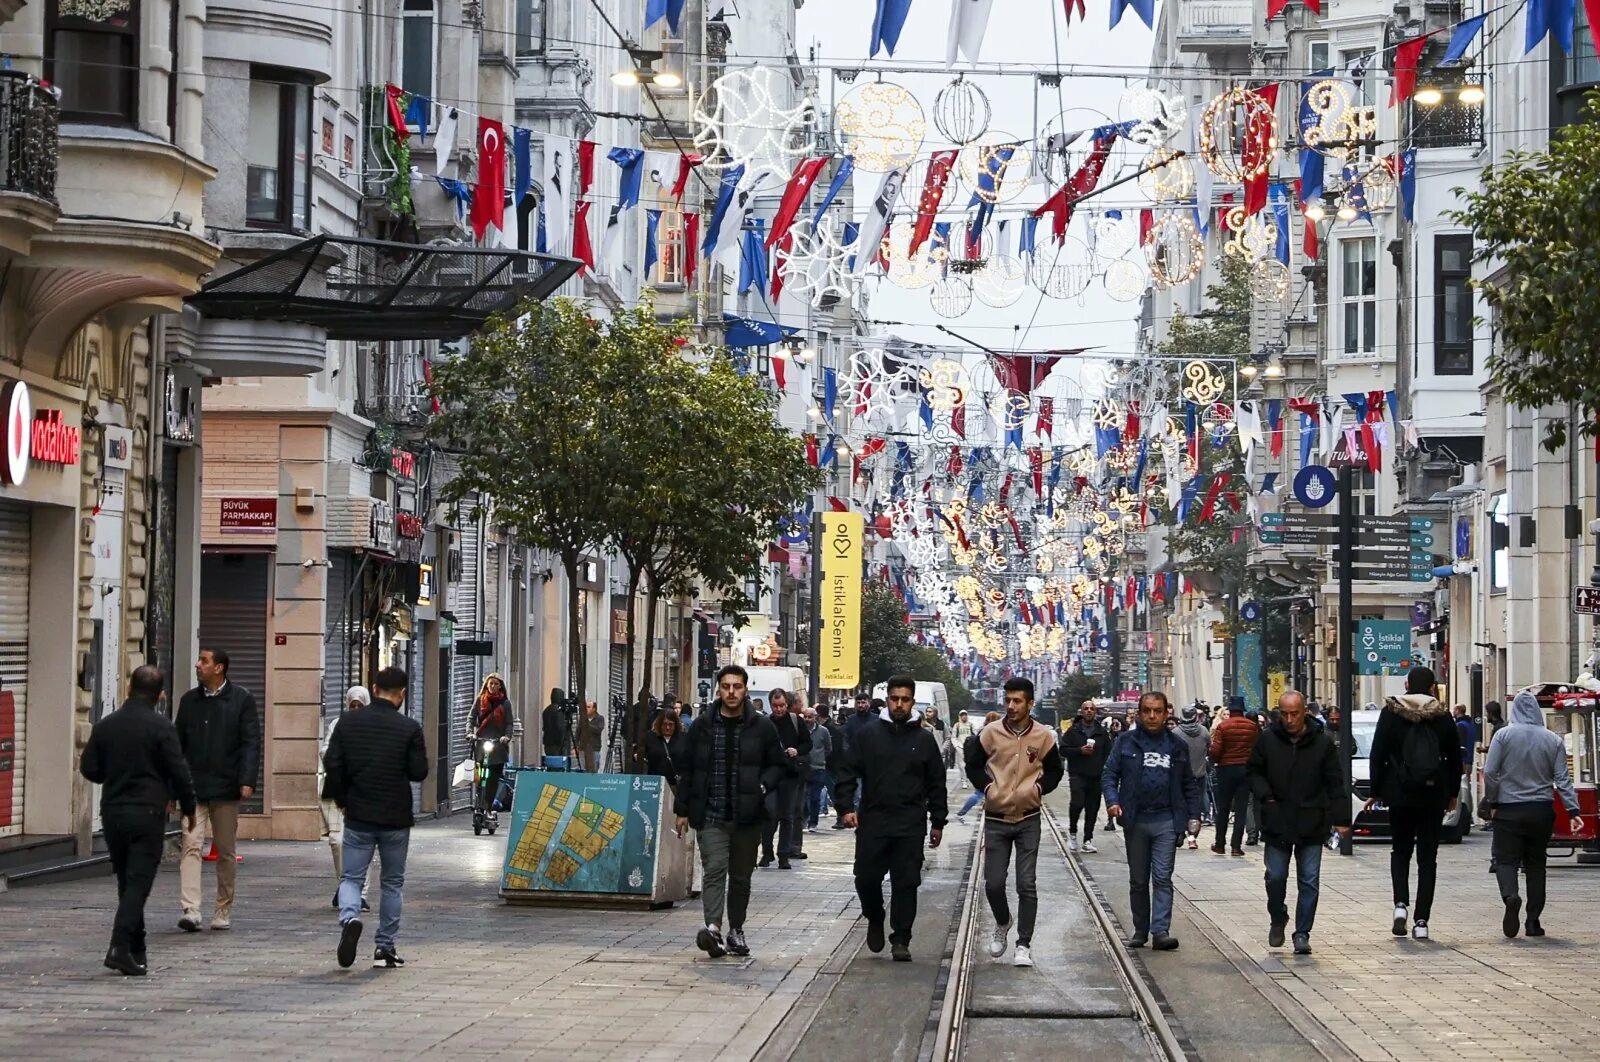 Истикляль Стамбул. Площадь Истикляль в Стамбуле. Улица Истикляль. Улица Истикляль и Таксим.